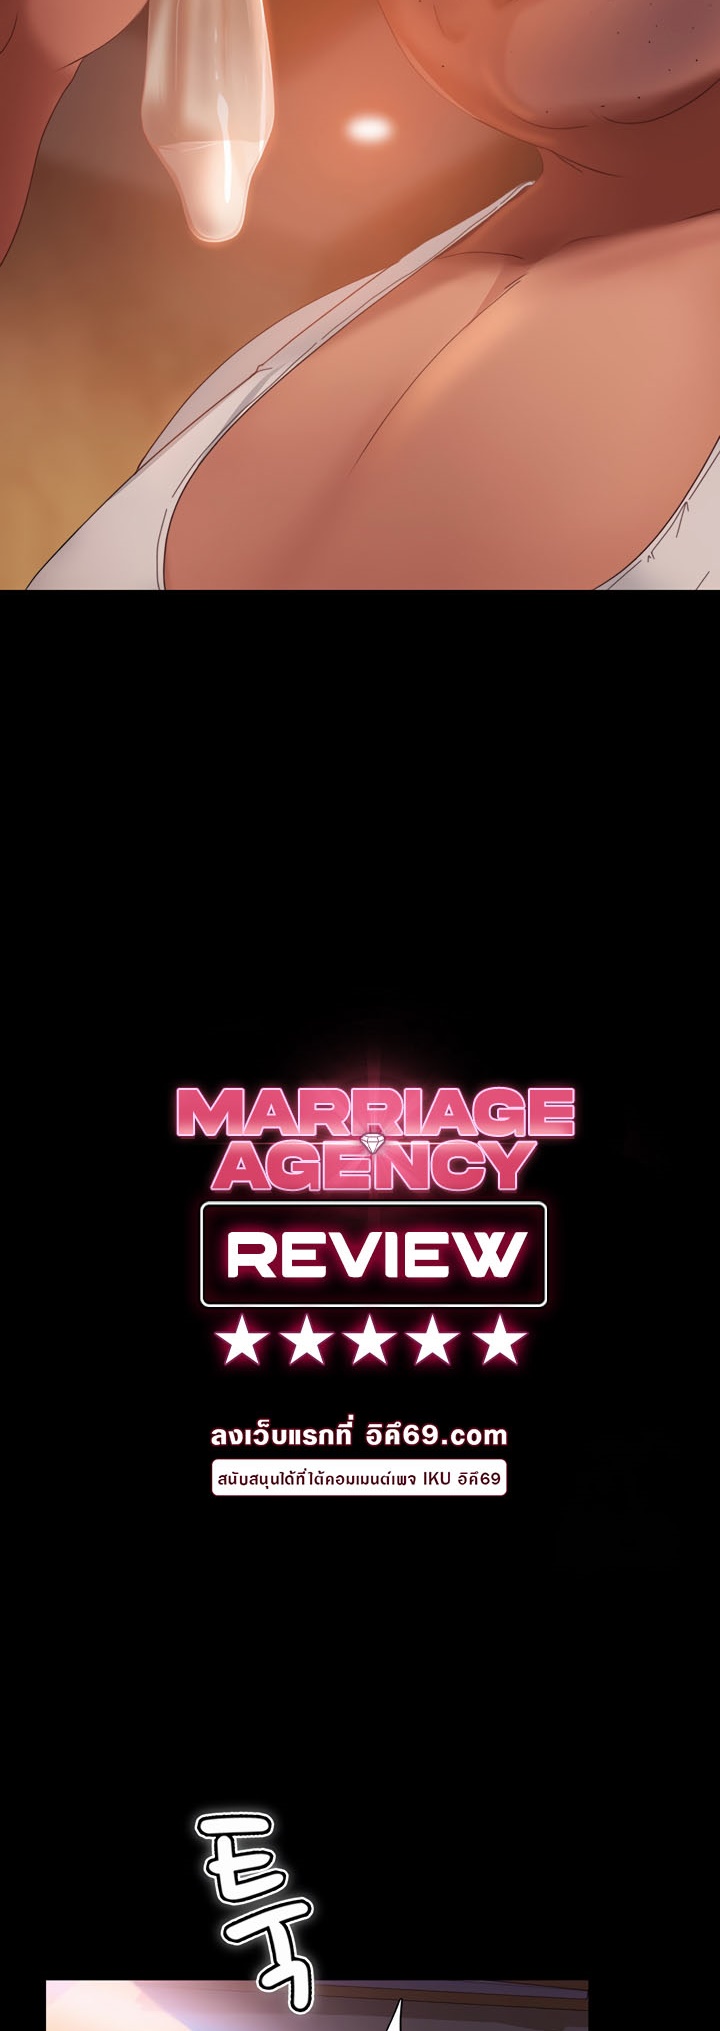 อ่านโดจิน เรื่อง Marriage Agency Review 37 04